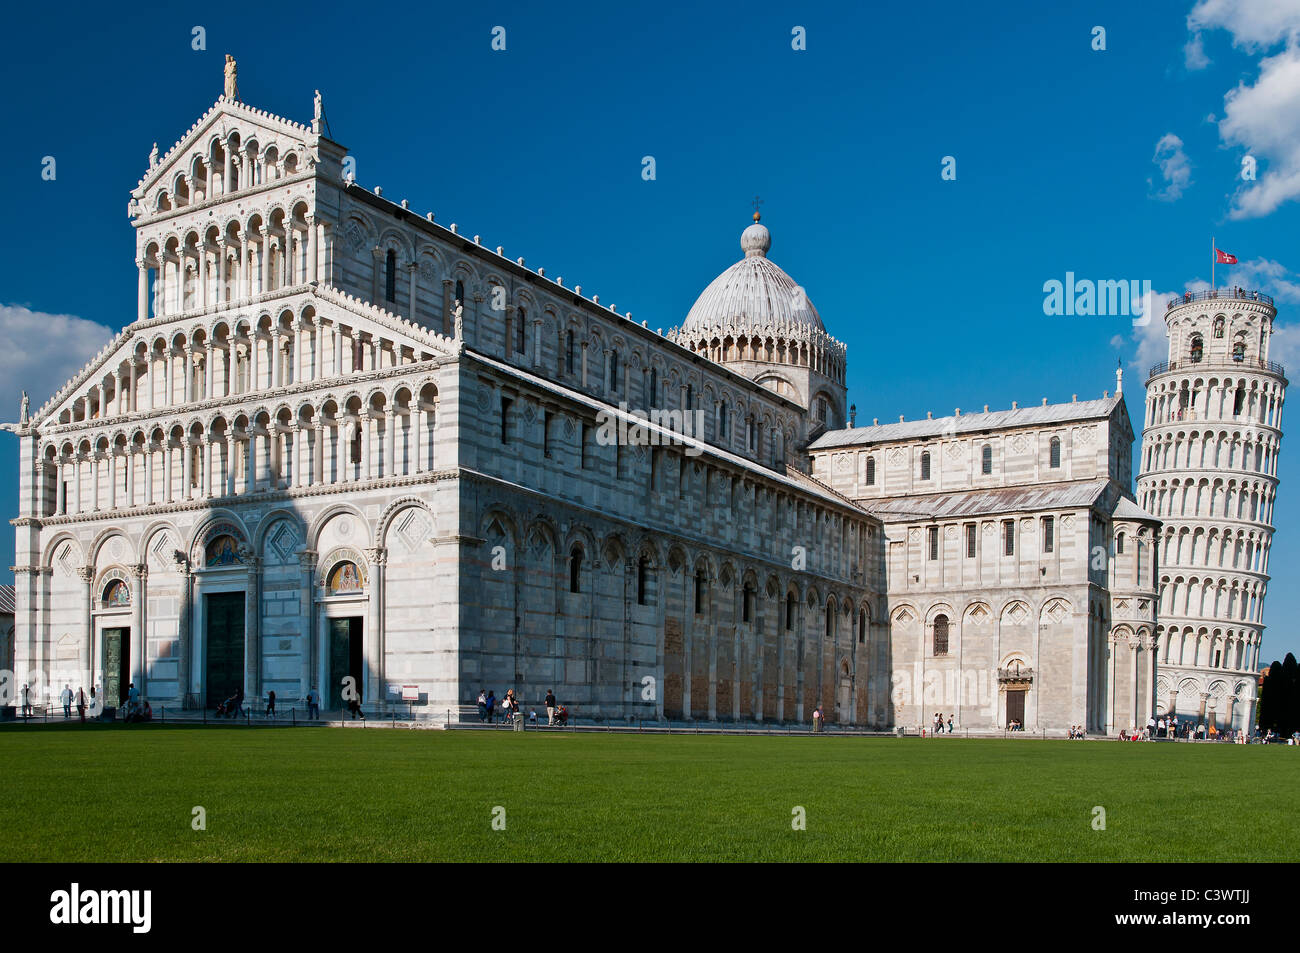 Vue panoramique sur la cathédrale et la Tour de Pise, la Piazza del Duomo (Place de la cathédrale), Pise, Toscane, Italie Banque D'Images